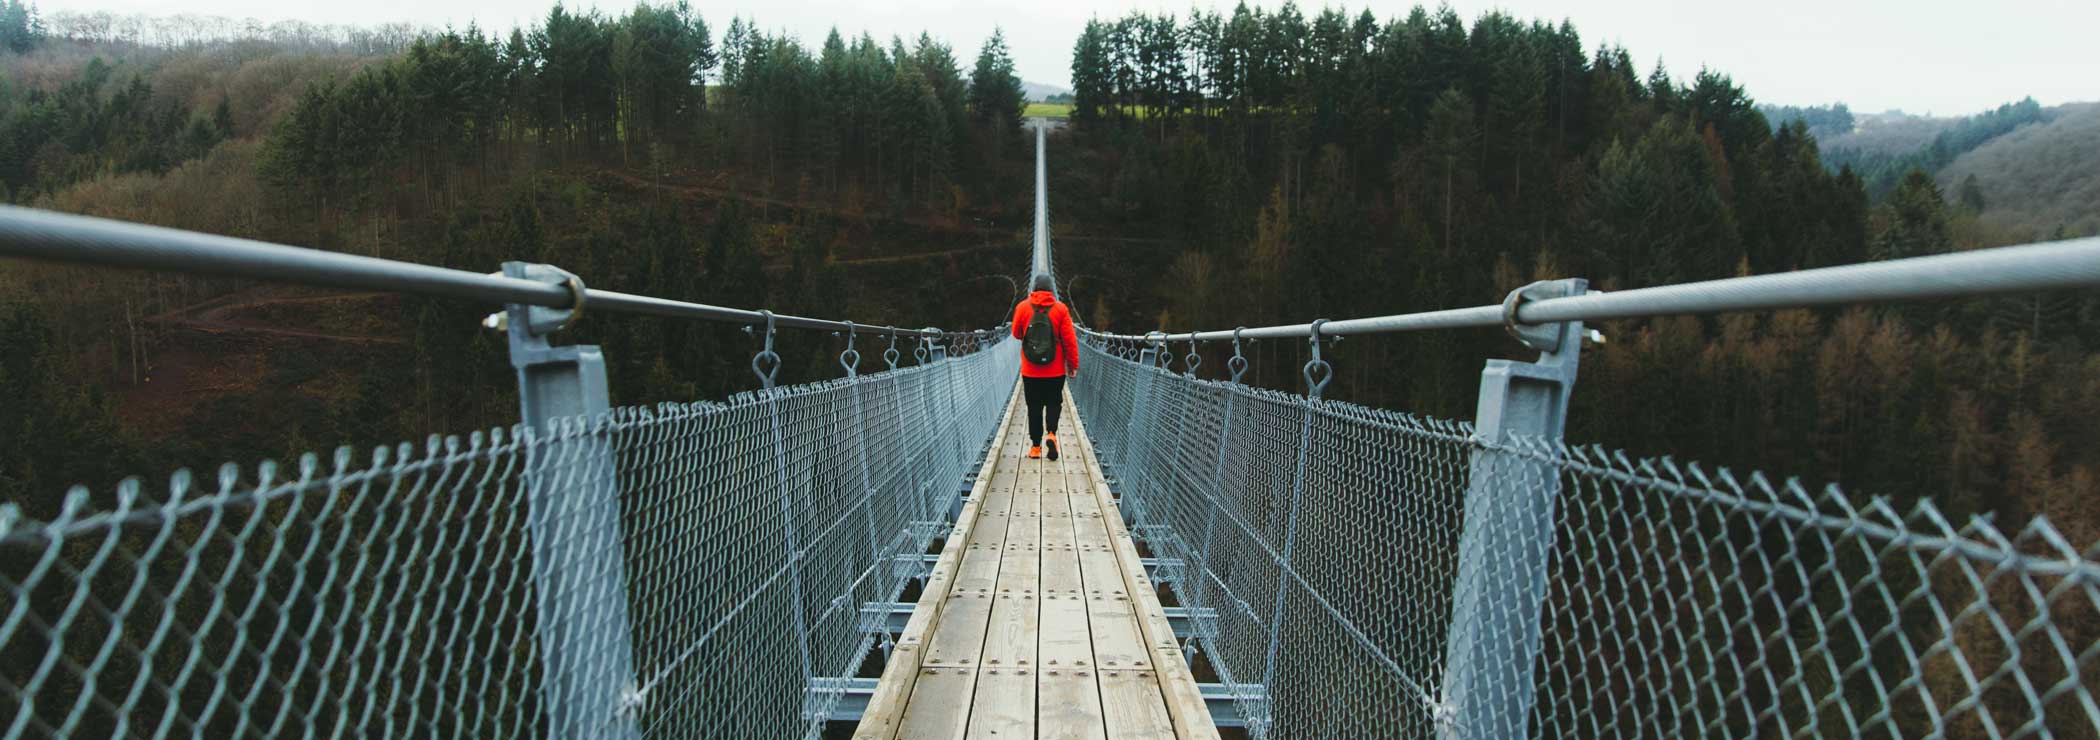 Man walking on suspension bridge